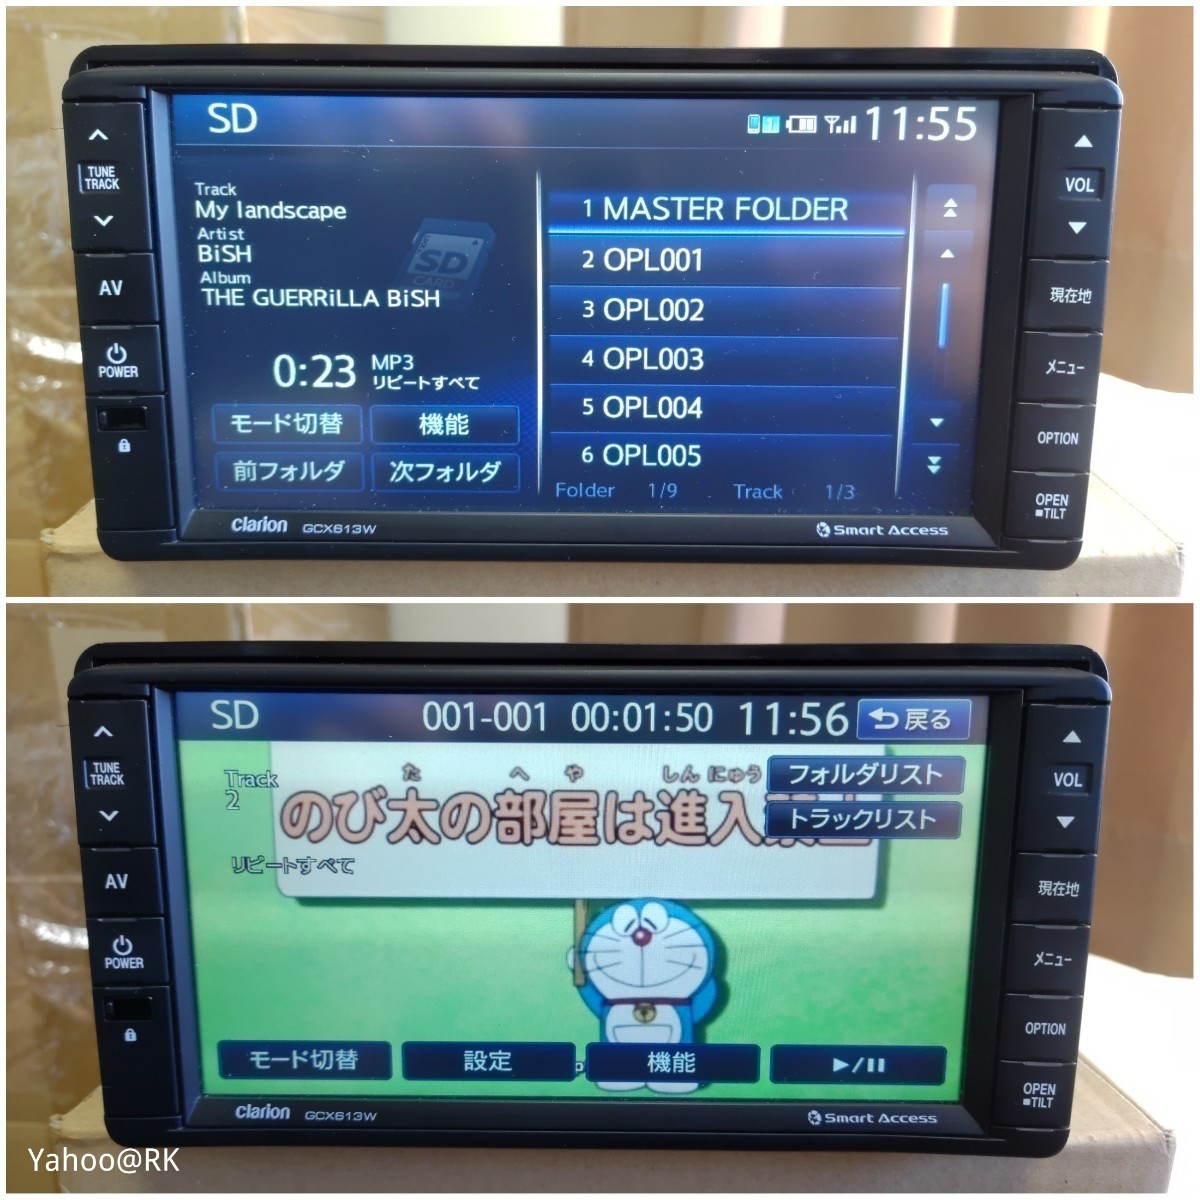  Mitsubishi оригинальная навигация GCX613W Clarion NX613 такой же и т.п. товар DVD воспроизведение Bluetooth телевизор Full seg SD карта USB iPod